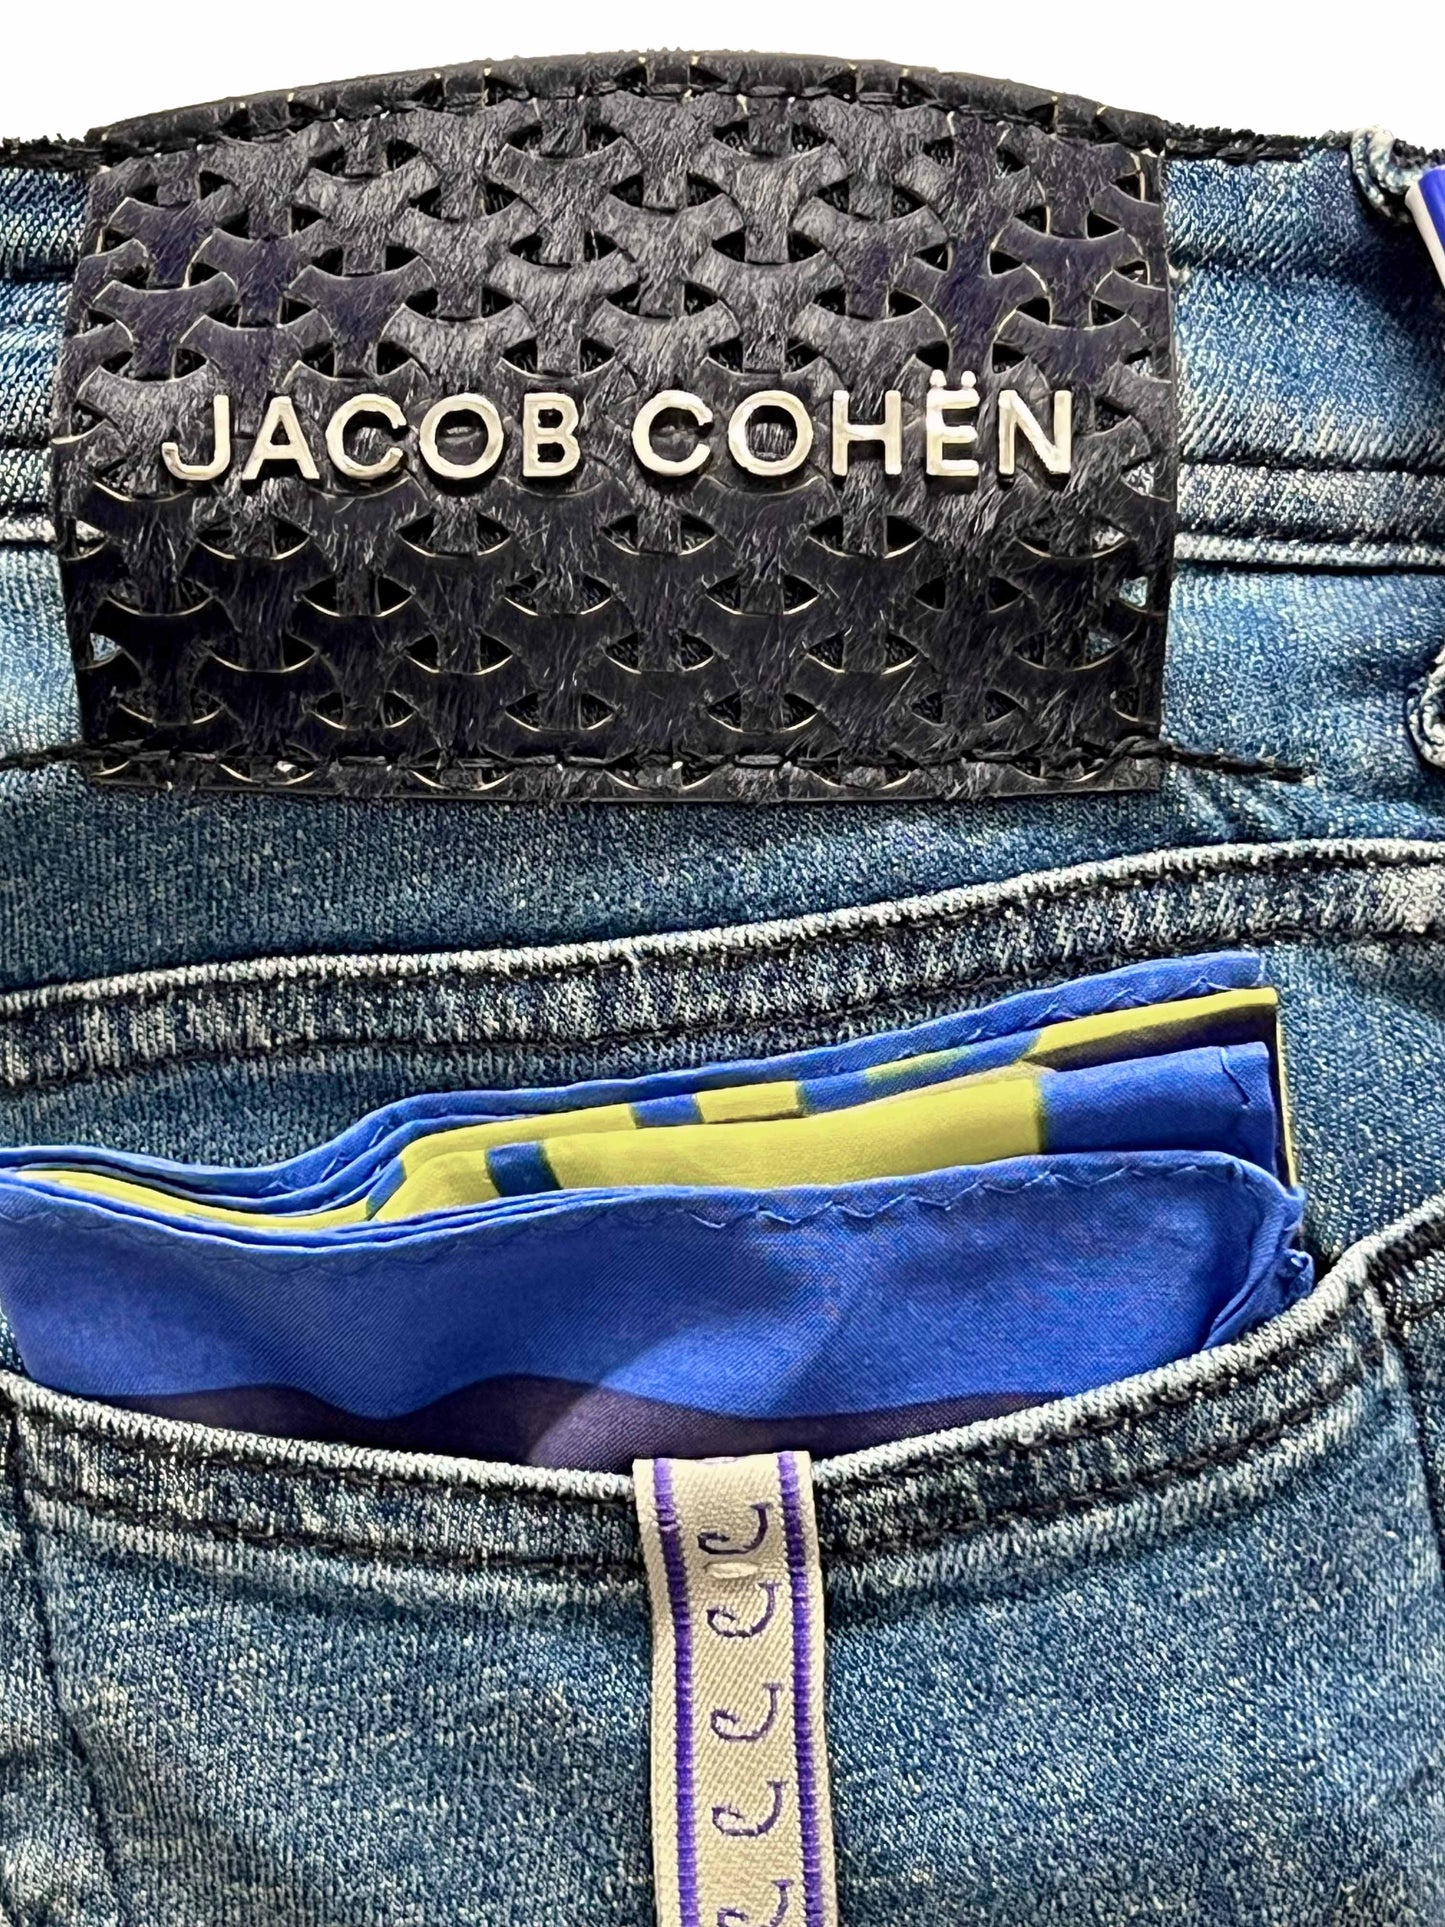 Jacob Cohen, BARD Leinen, navy woven label, mid blue Jacob Cohen